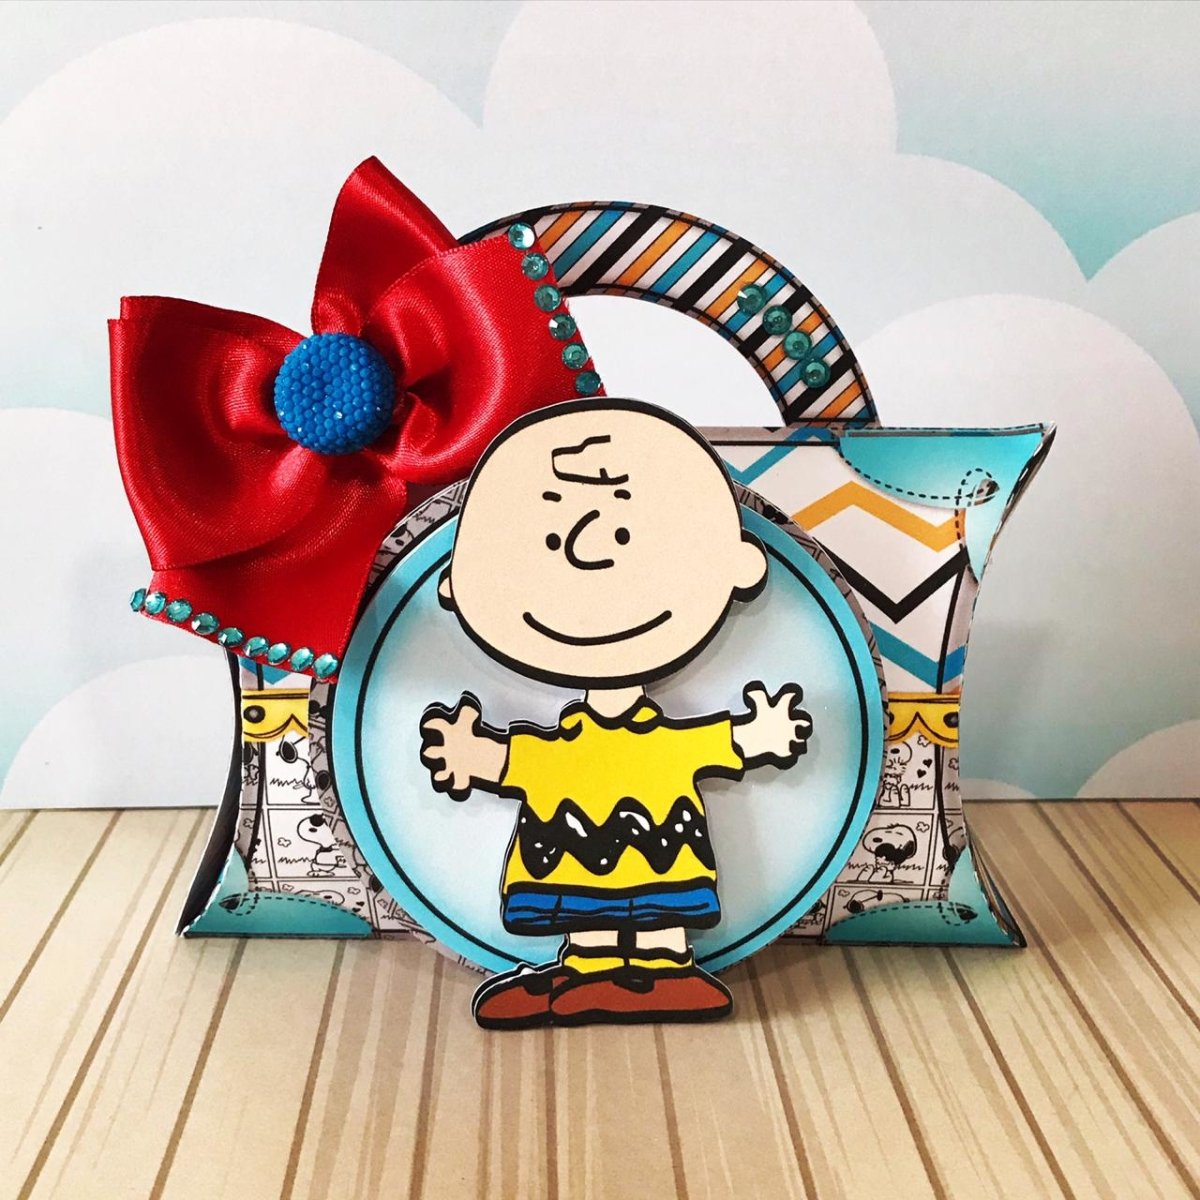 Festa de Aniversário Snoopy - Festas Aquarela a melhor decoração de festa de aniversário está aqui!